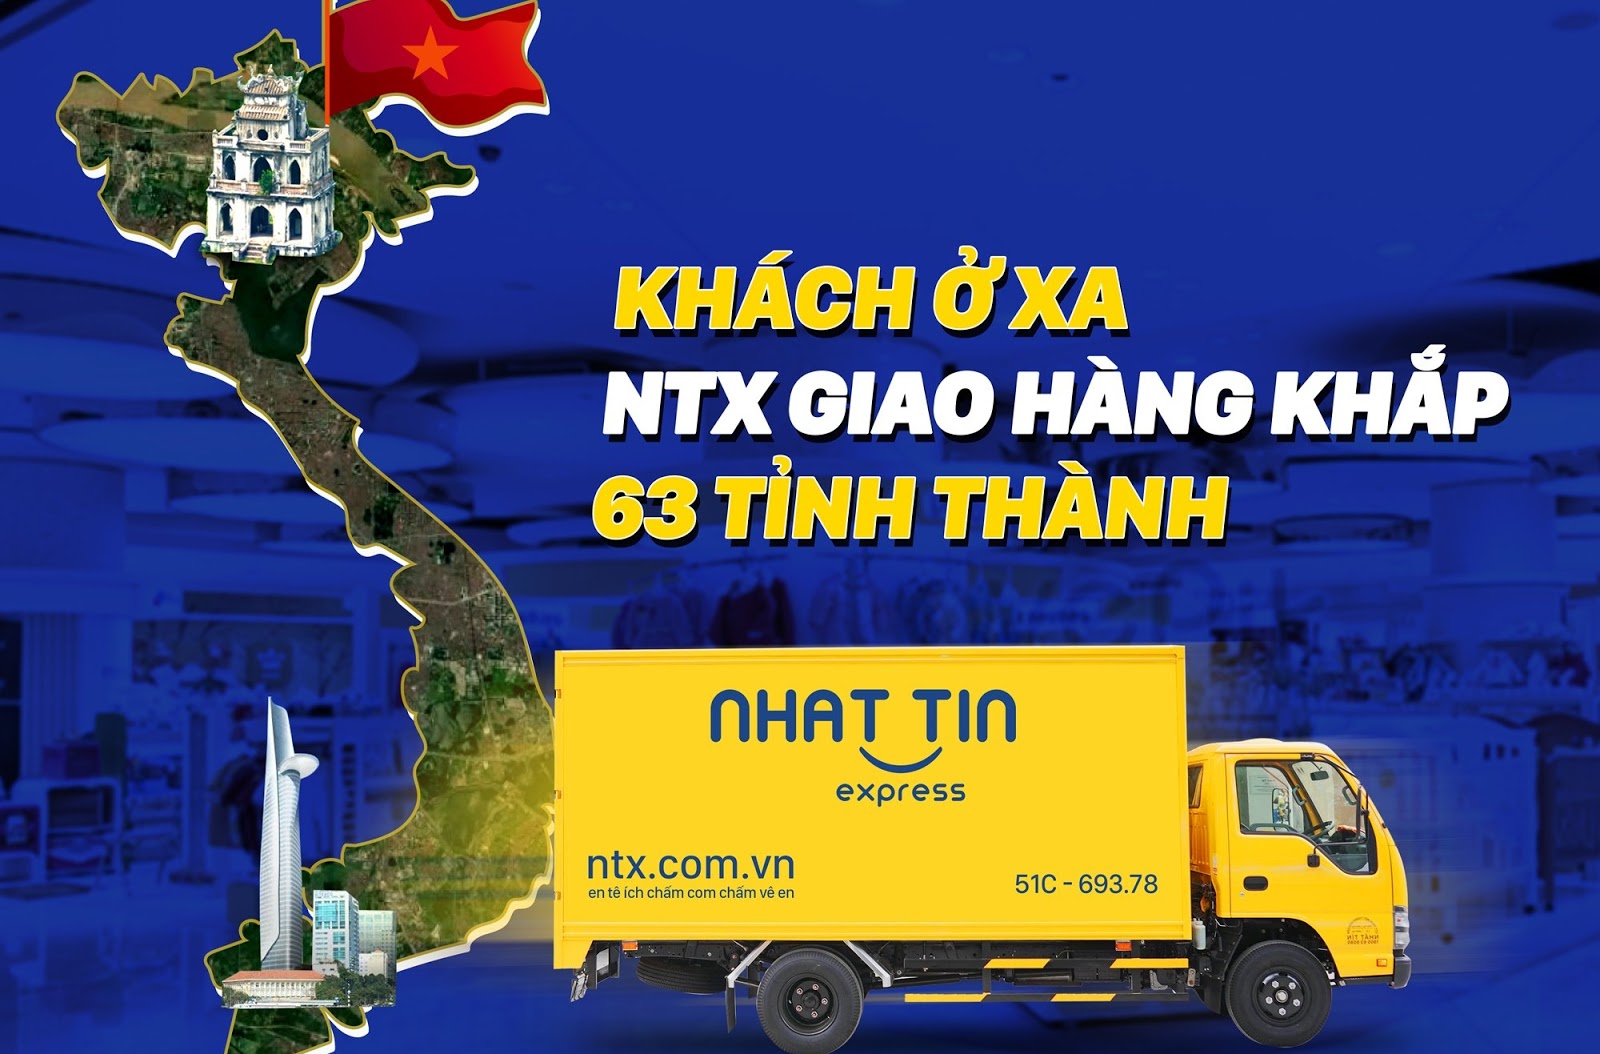 Dịch vụ ship COD uy tín 63 tỉnh thành Việt Nam NTX - Nhất Tín Express